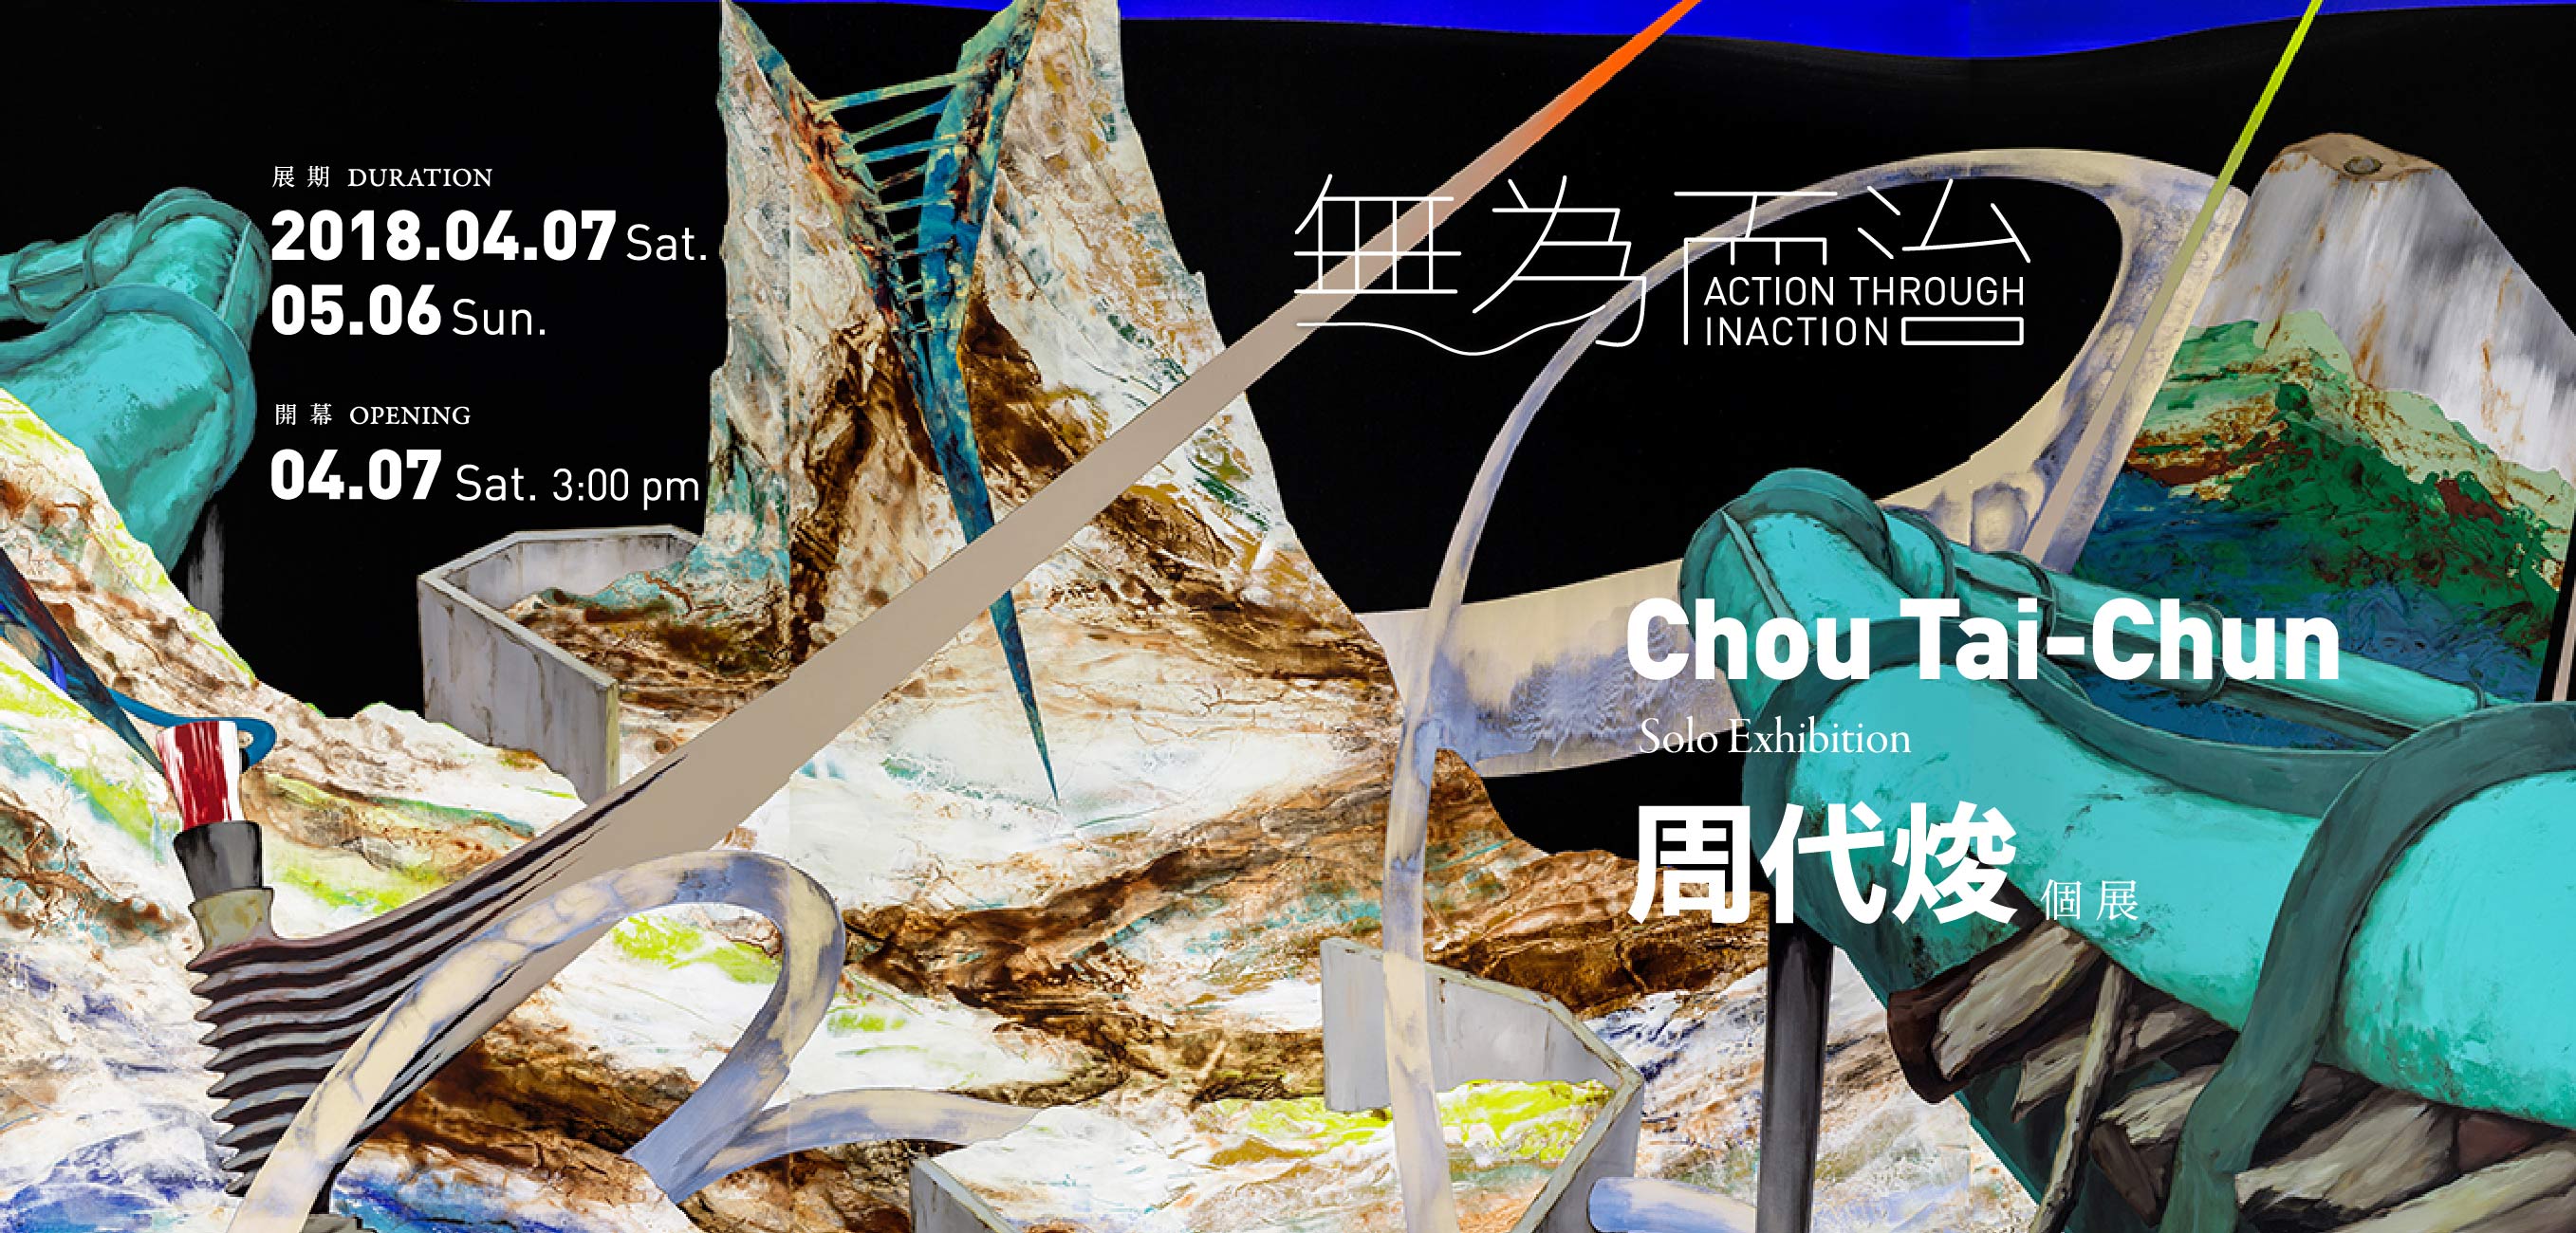 Action Through Inaction — CHOU Tai-Chun Solo Exhibition